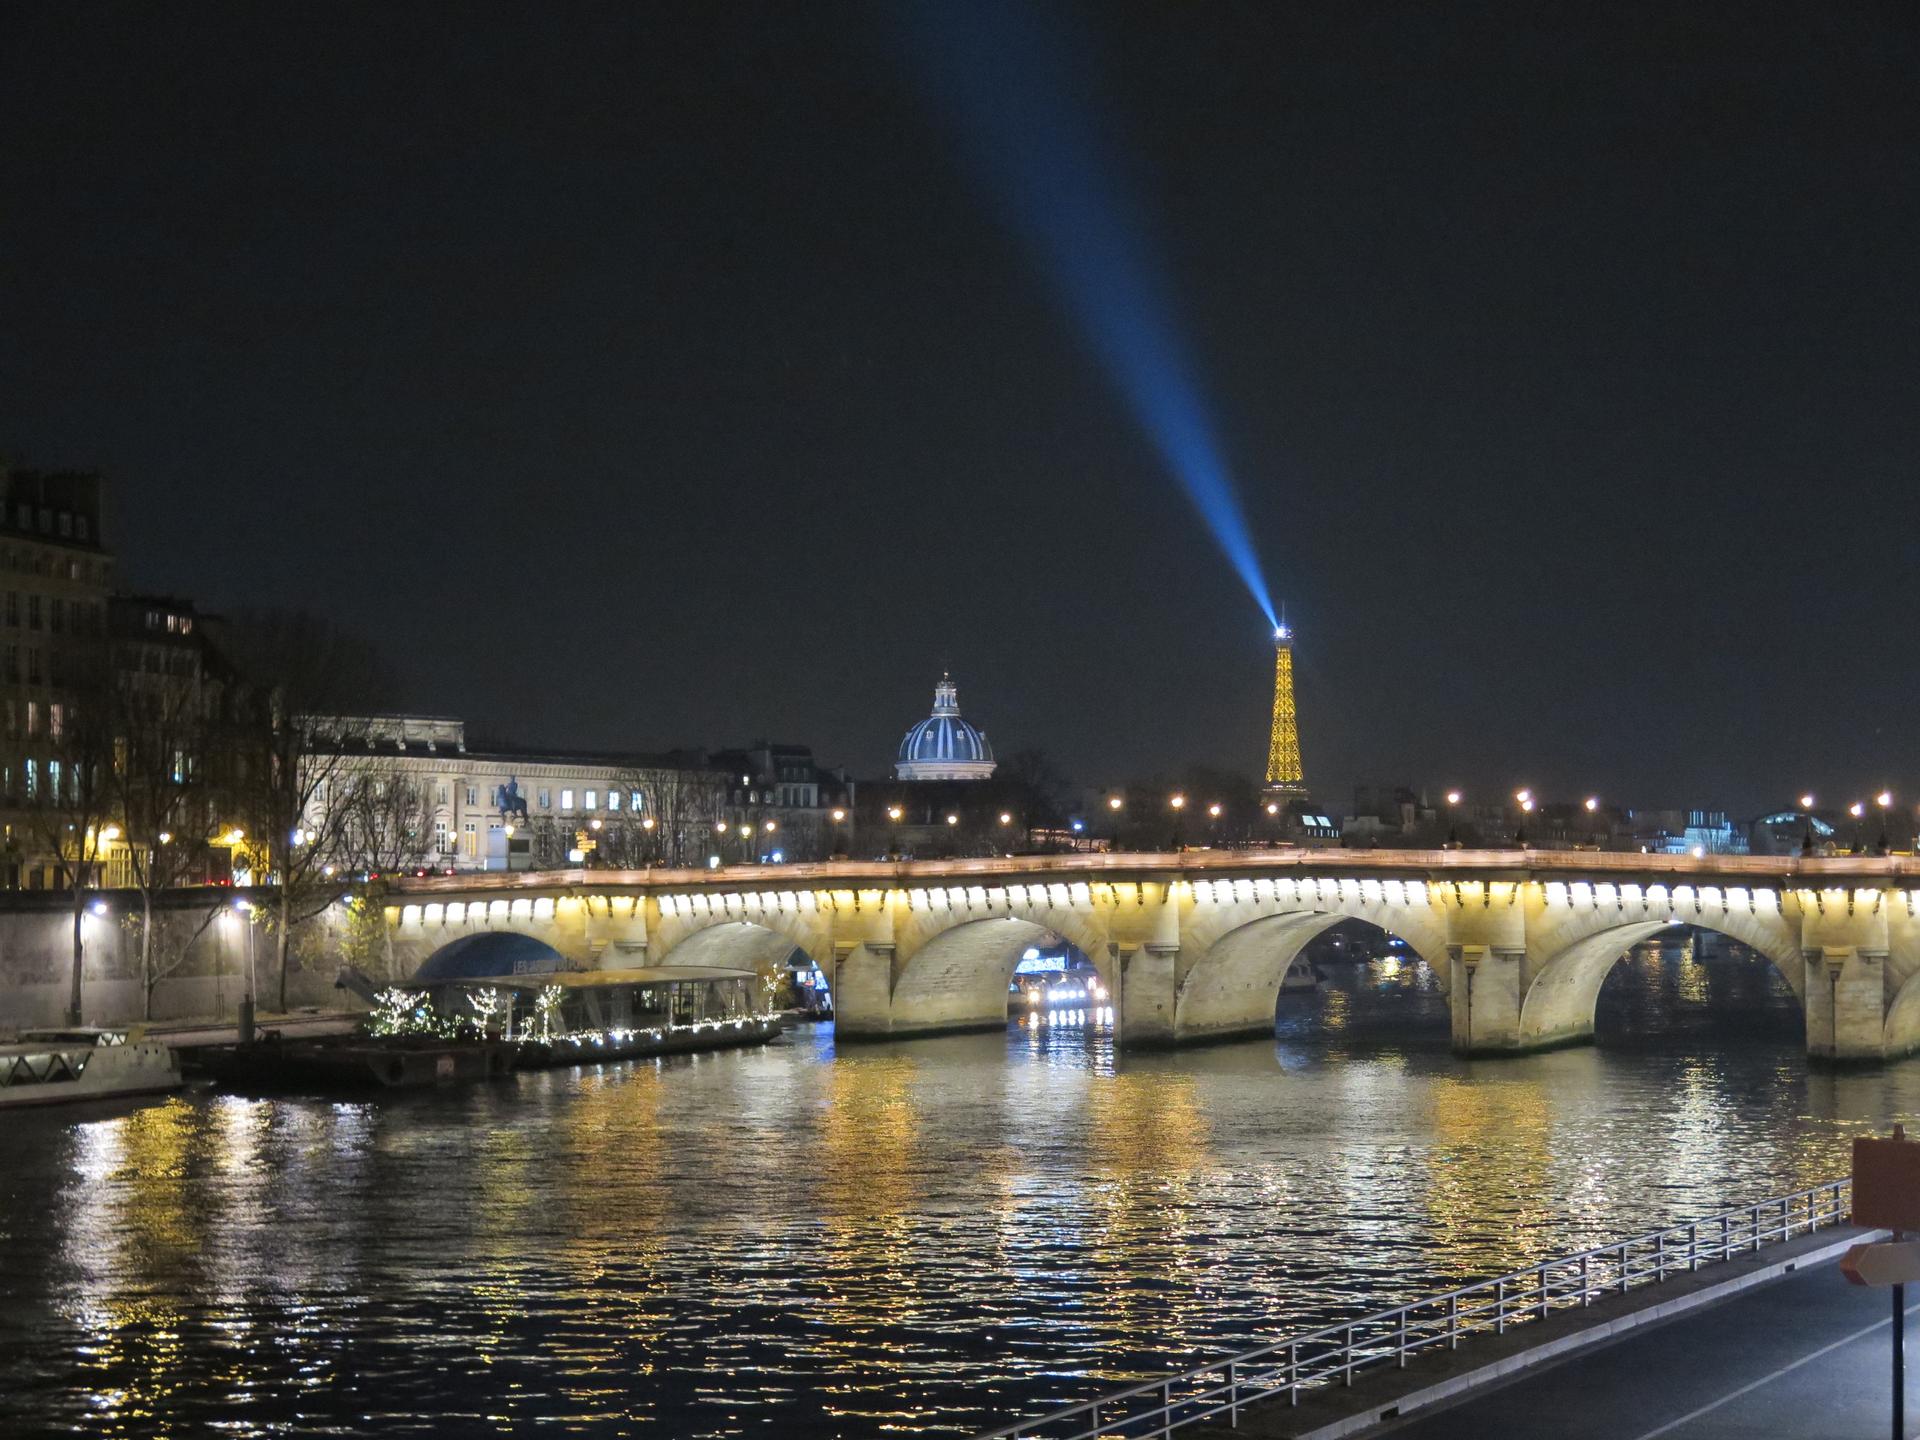 The Eiffel tower illuminated at night